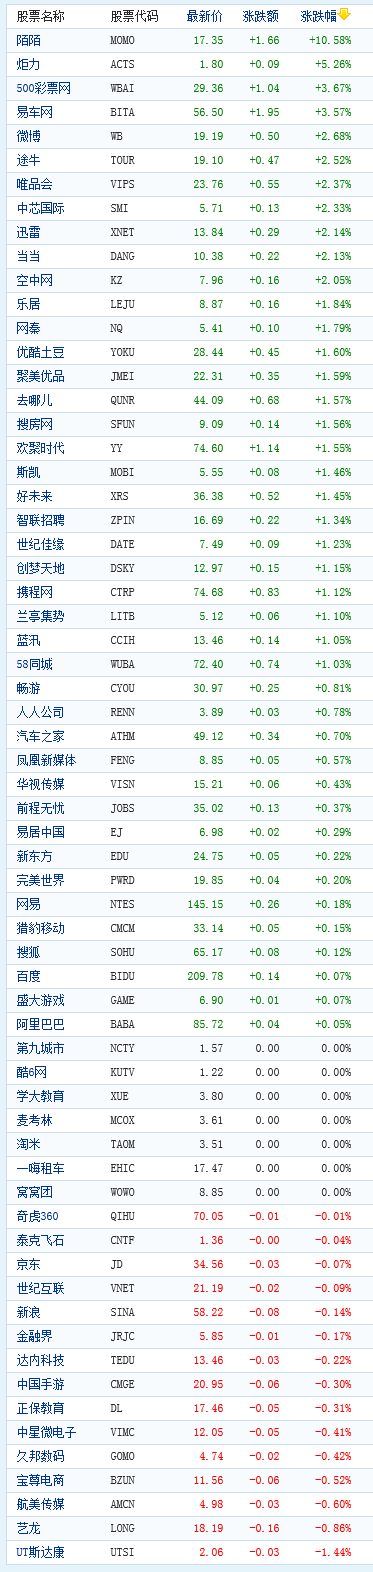 中国概念股周二开盘多数上涨 炬力涨5.26%